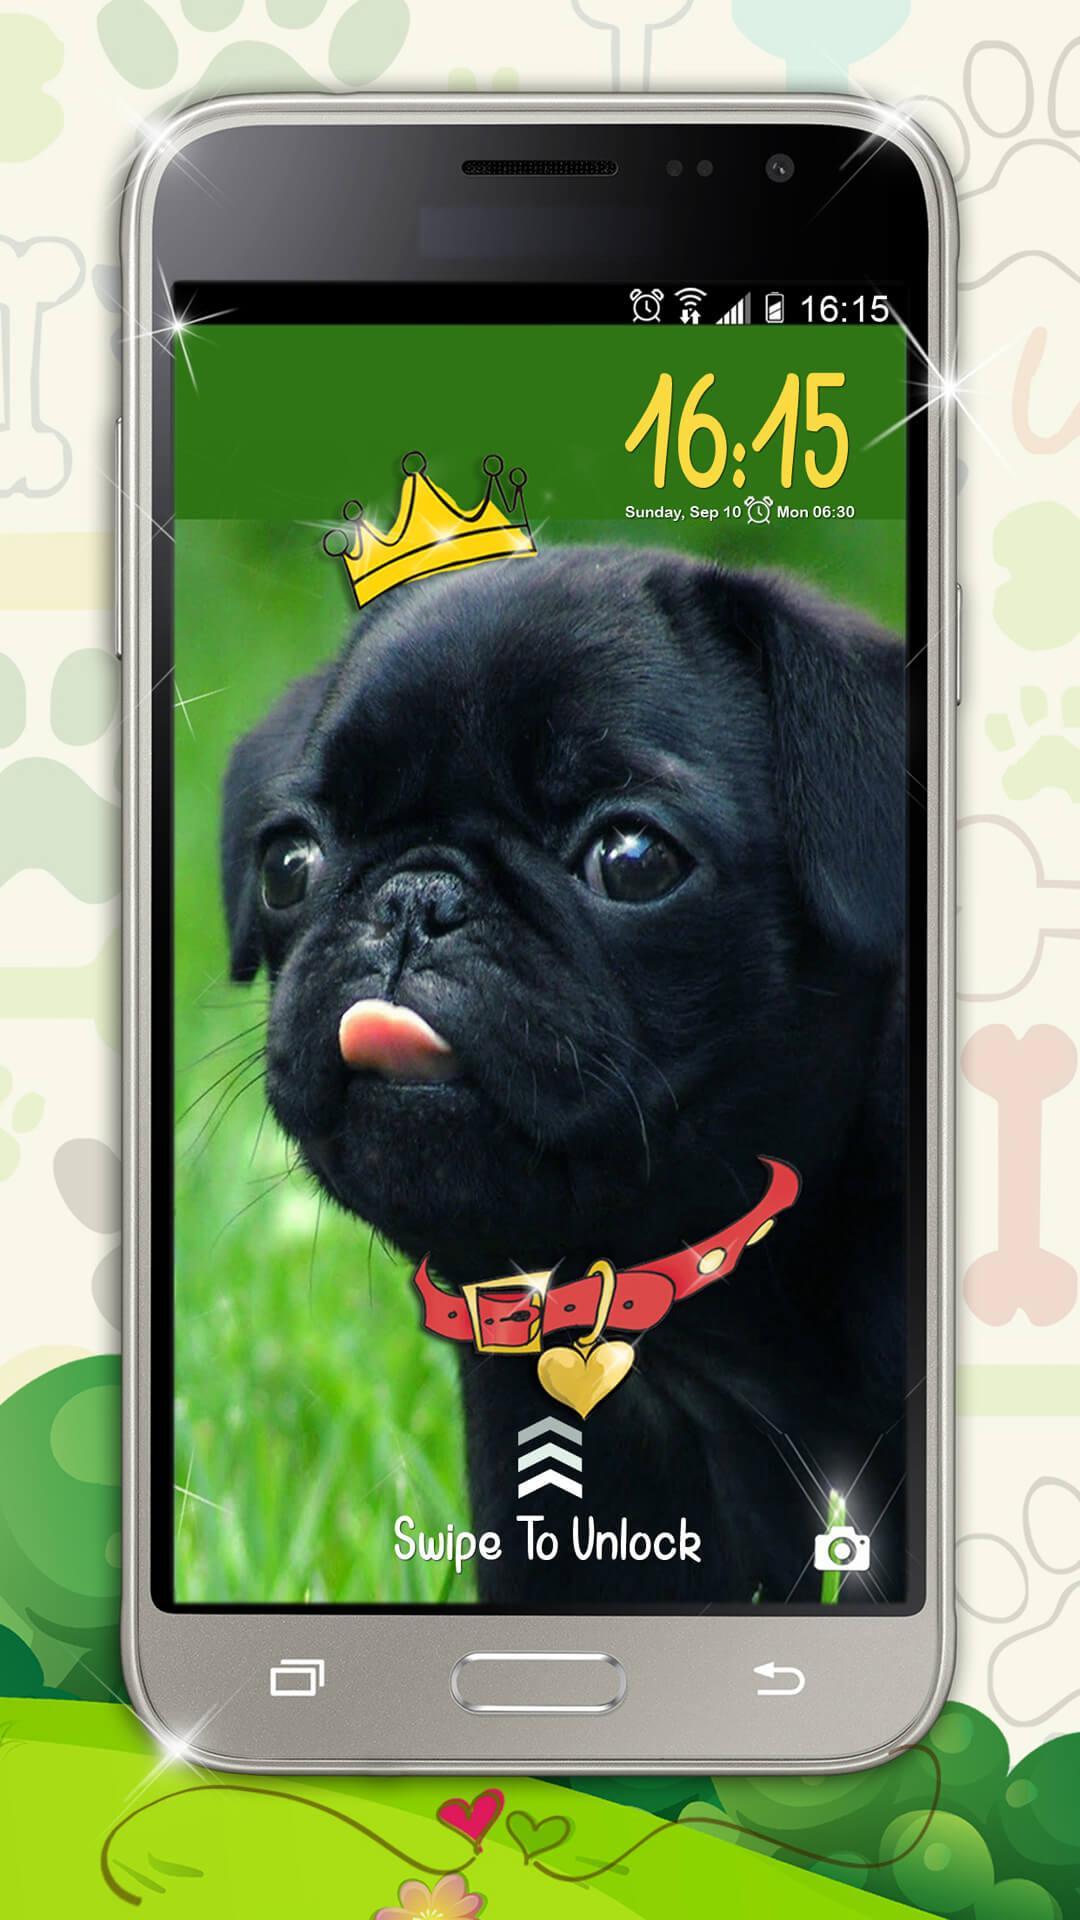 Android 用の 子犬 ロック画面 可愛い スクリーンセーバー Apk をダウンロード